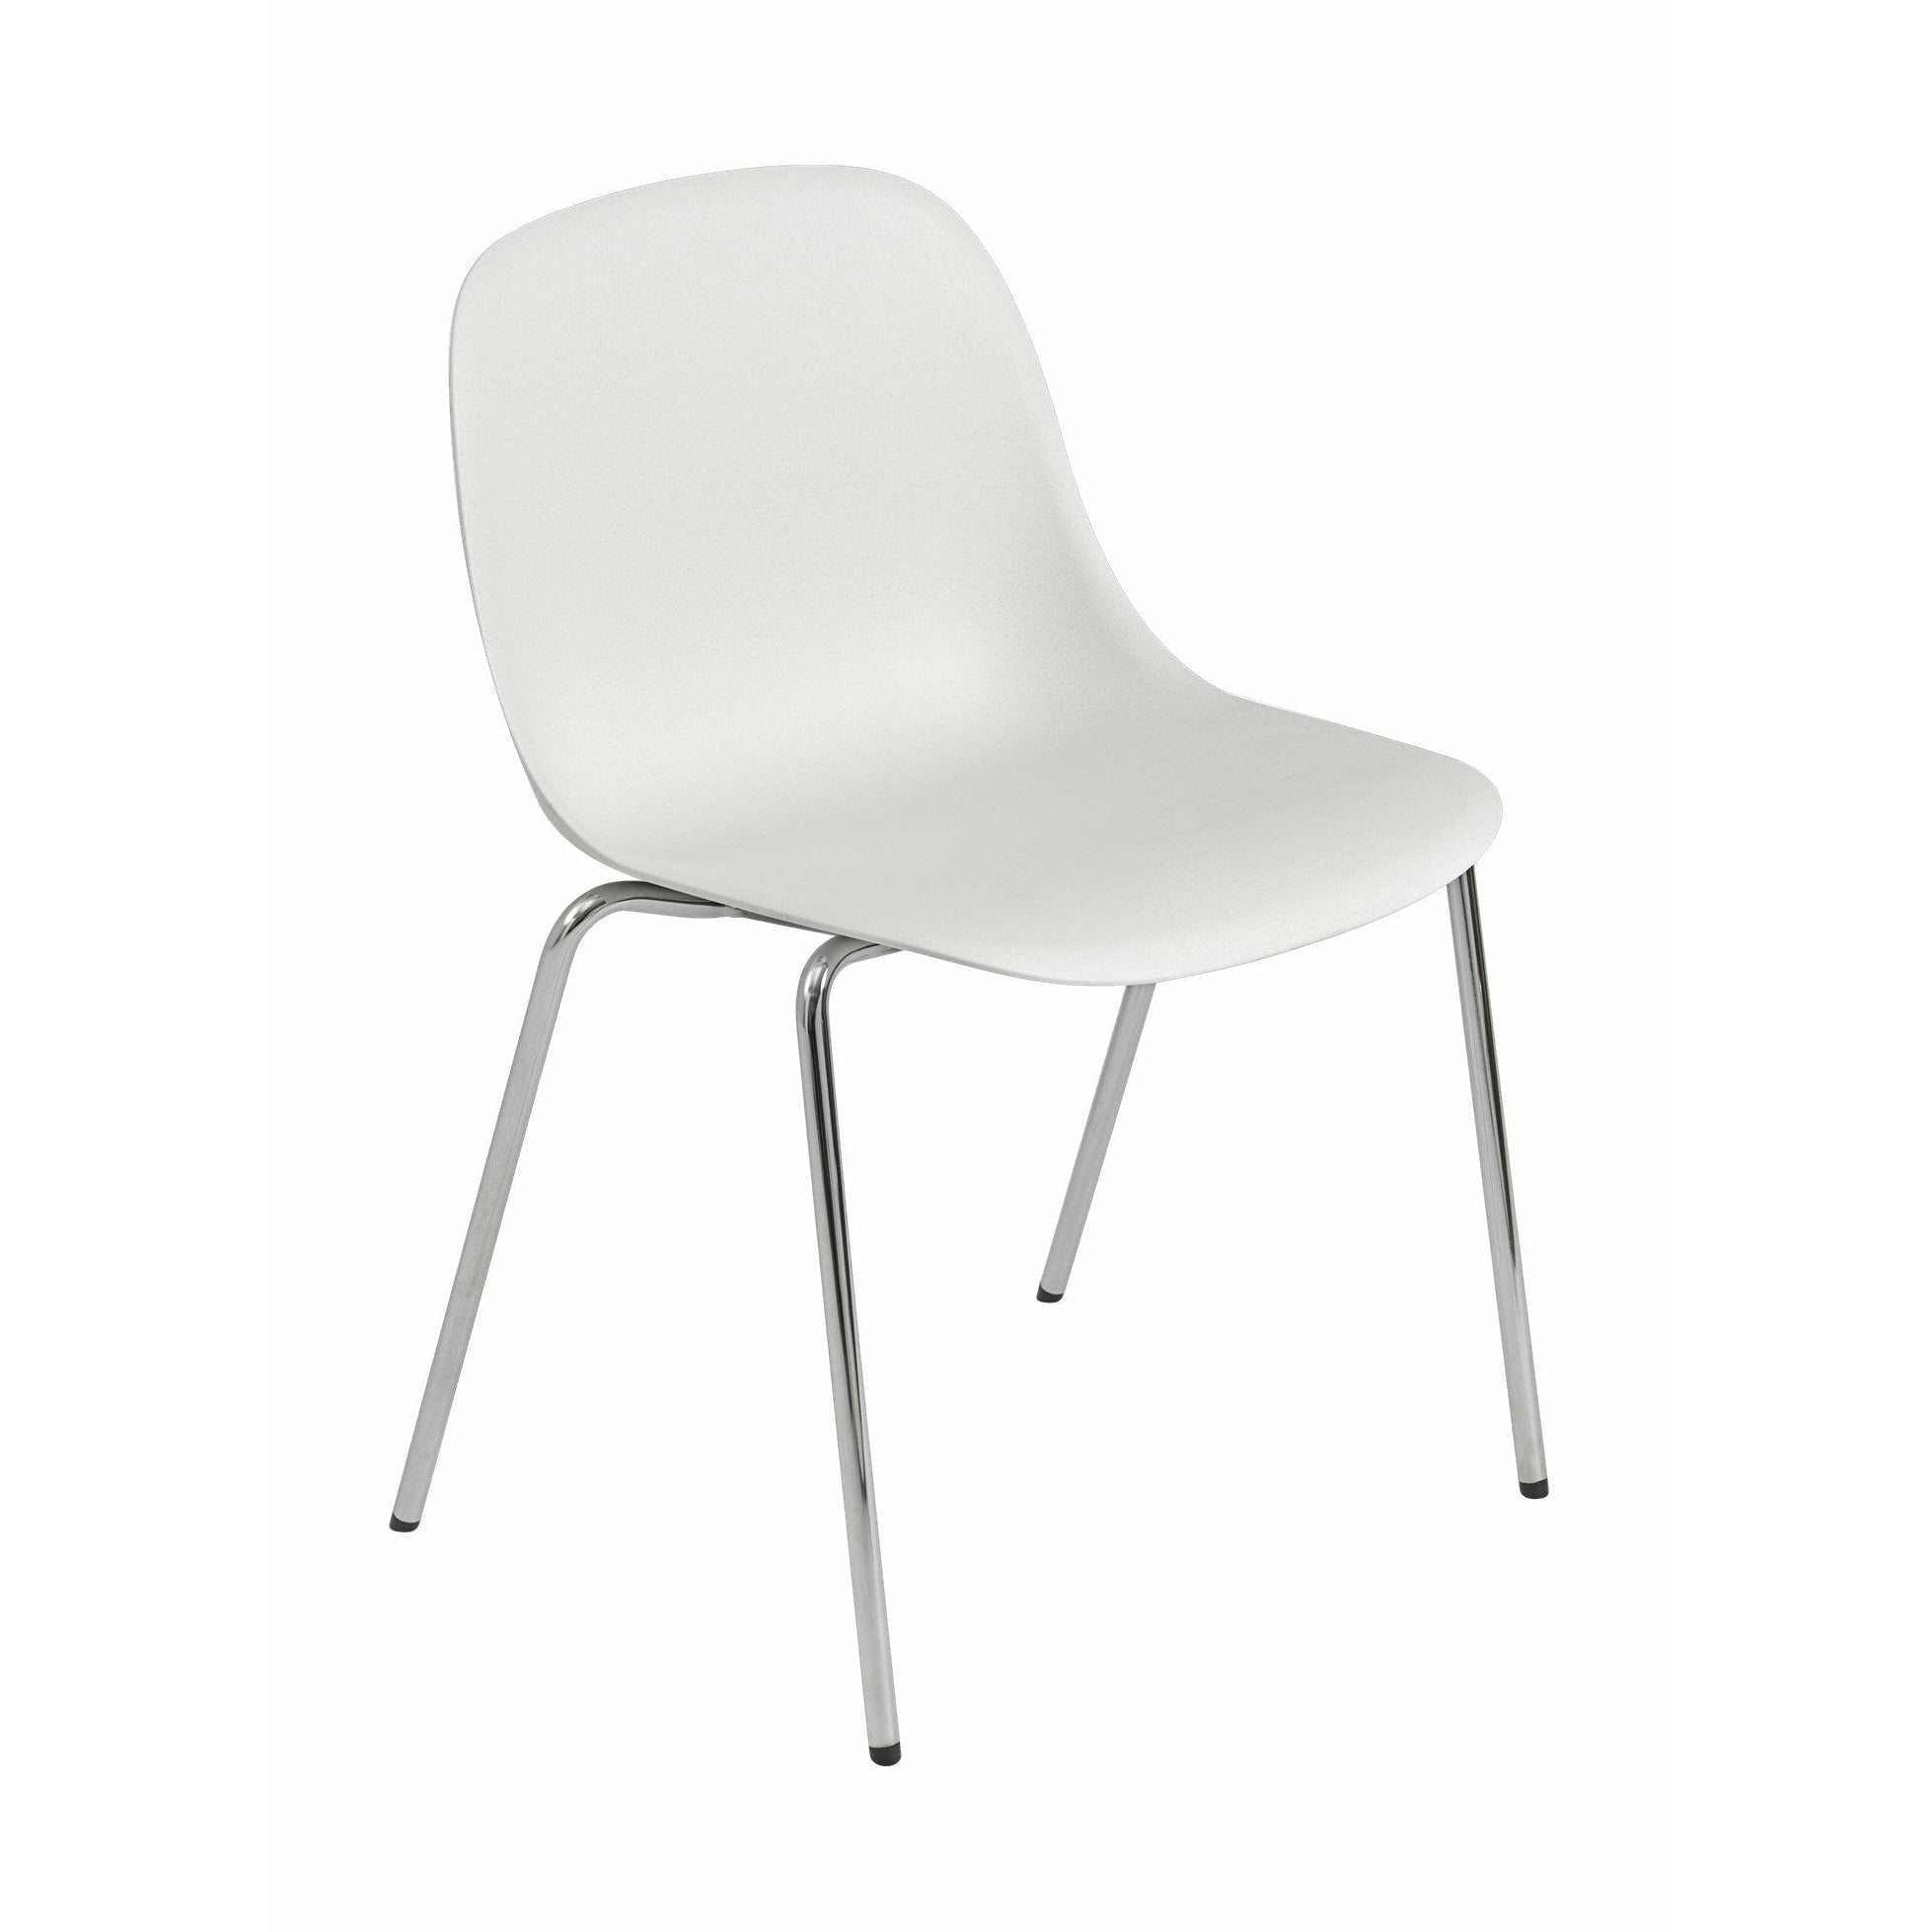 Muuto Fiber Side -stol gjord av återvunnen plast en bas, naturlig vit/krom